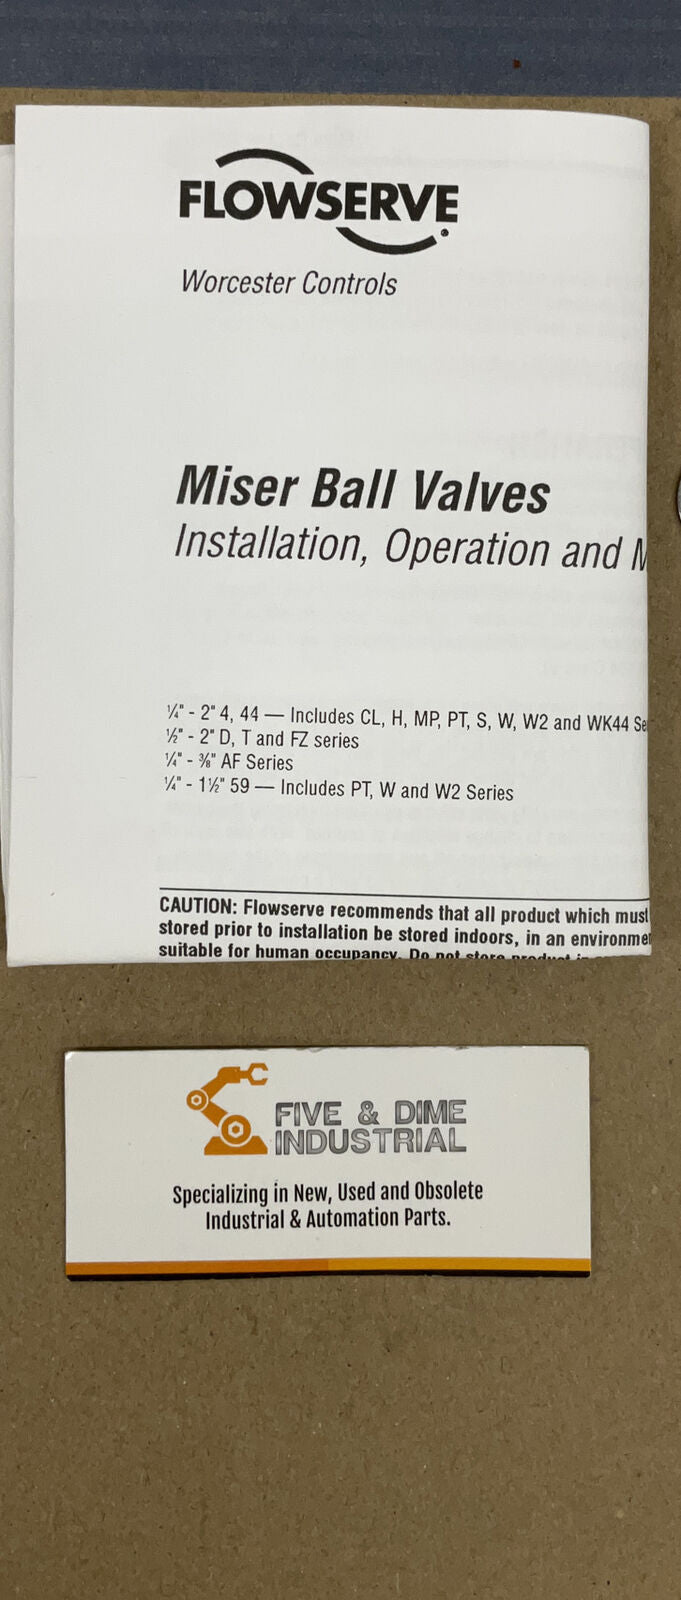 Flowserve Miser Ball Valve Maintenance Kit 10T-RK44 (GR158) - 0